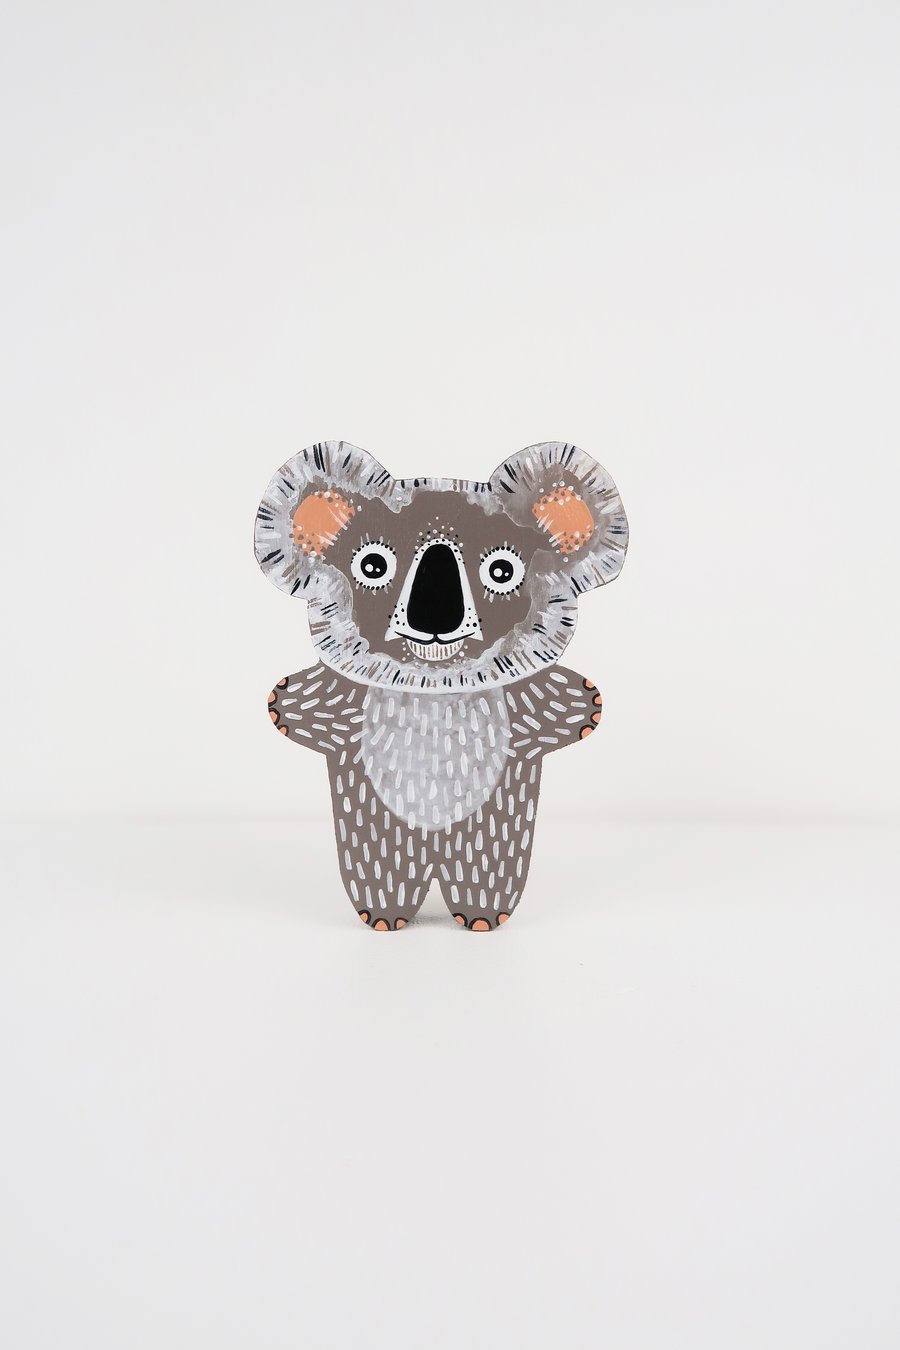 koala wooden ornament, cute home decor, animal lover gift